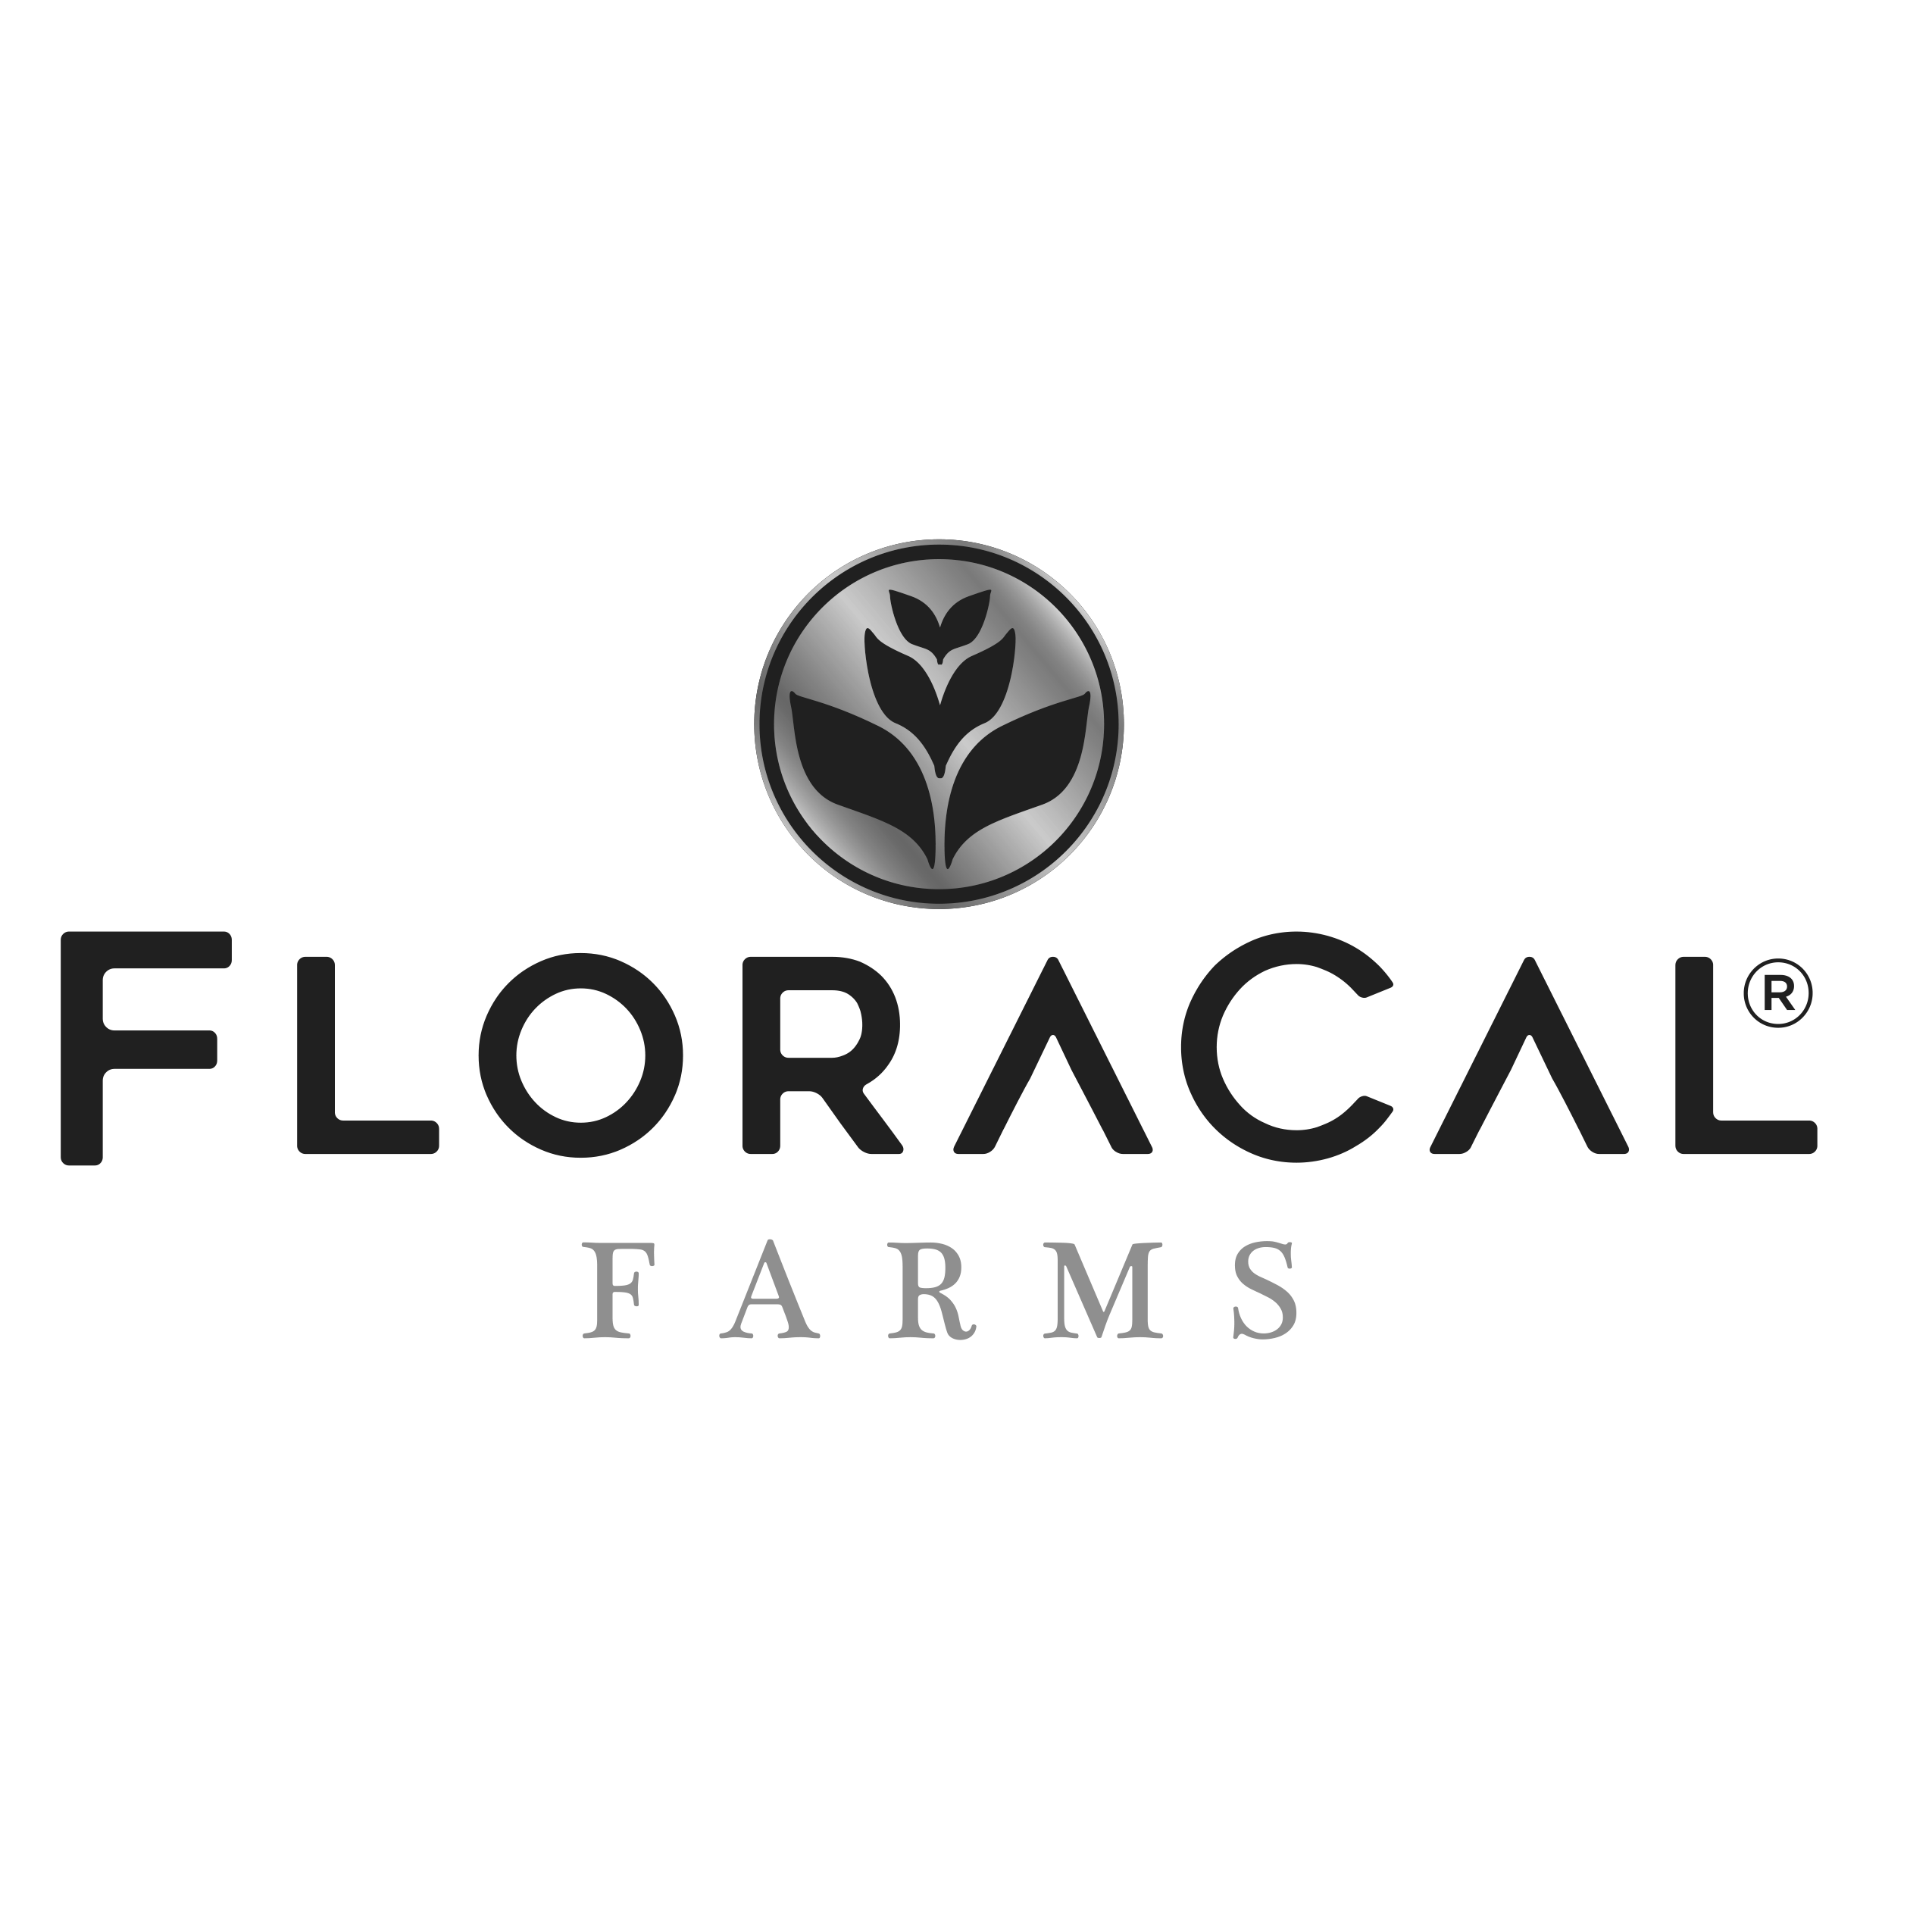 Floracal Farms